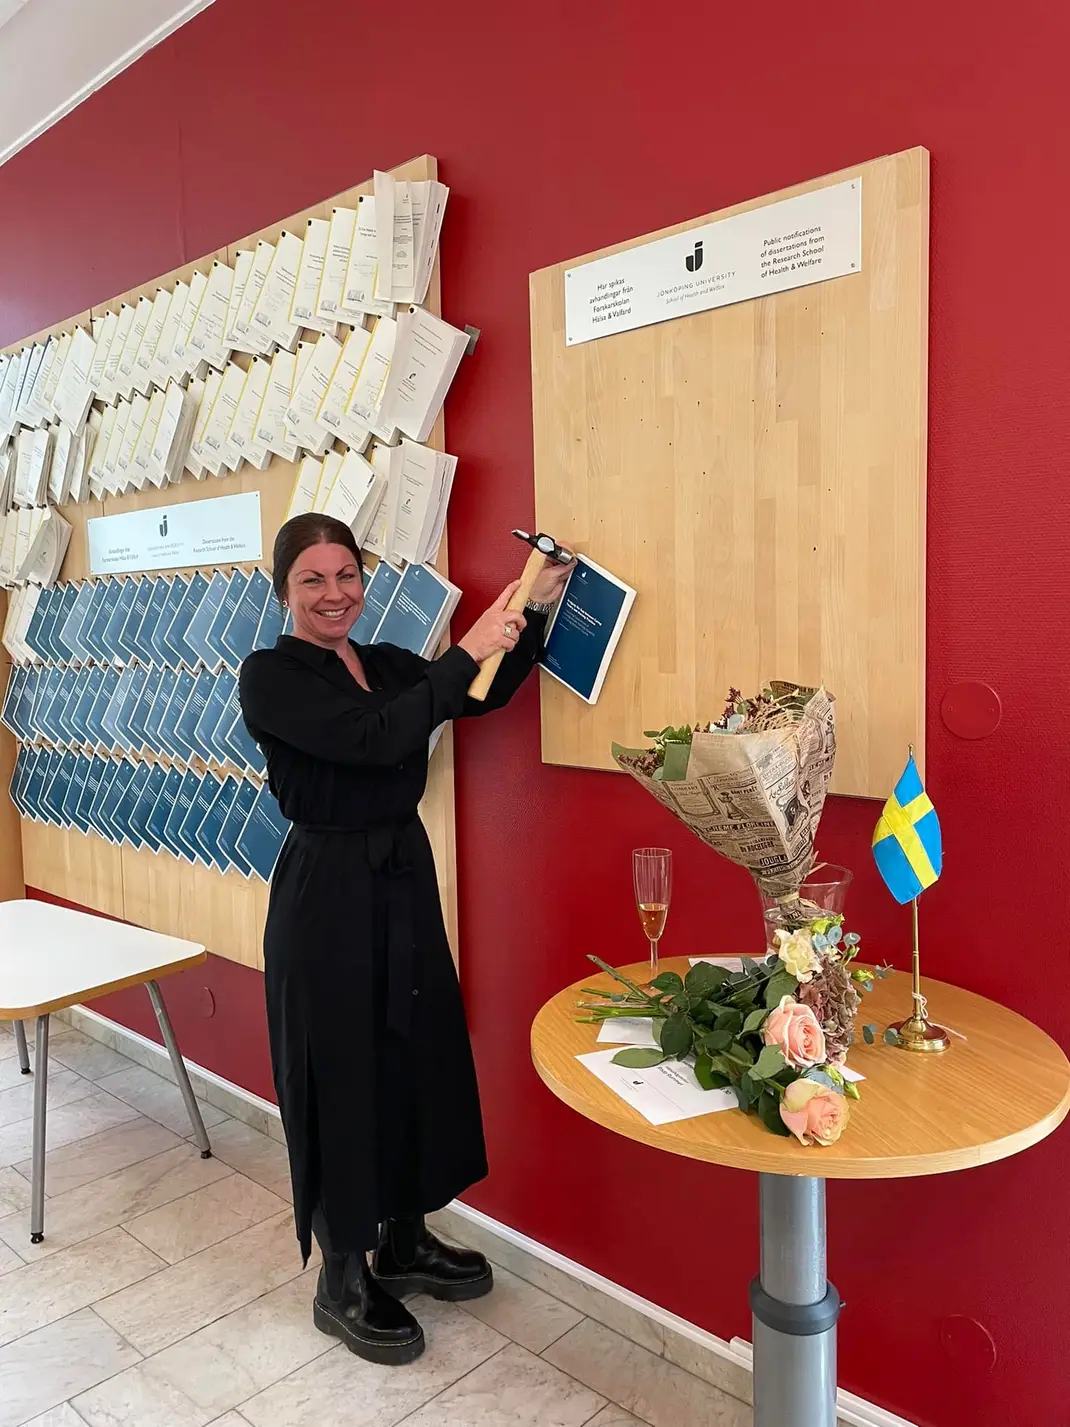 Forskaren Sophie Mårtensson spikar sin avhandling på väggen, en gammal tradition för att presentera ny vetenskap innan den granskas..